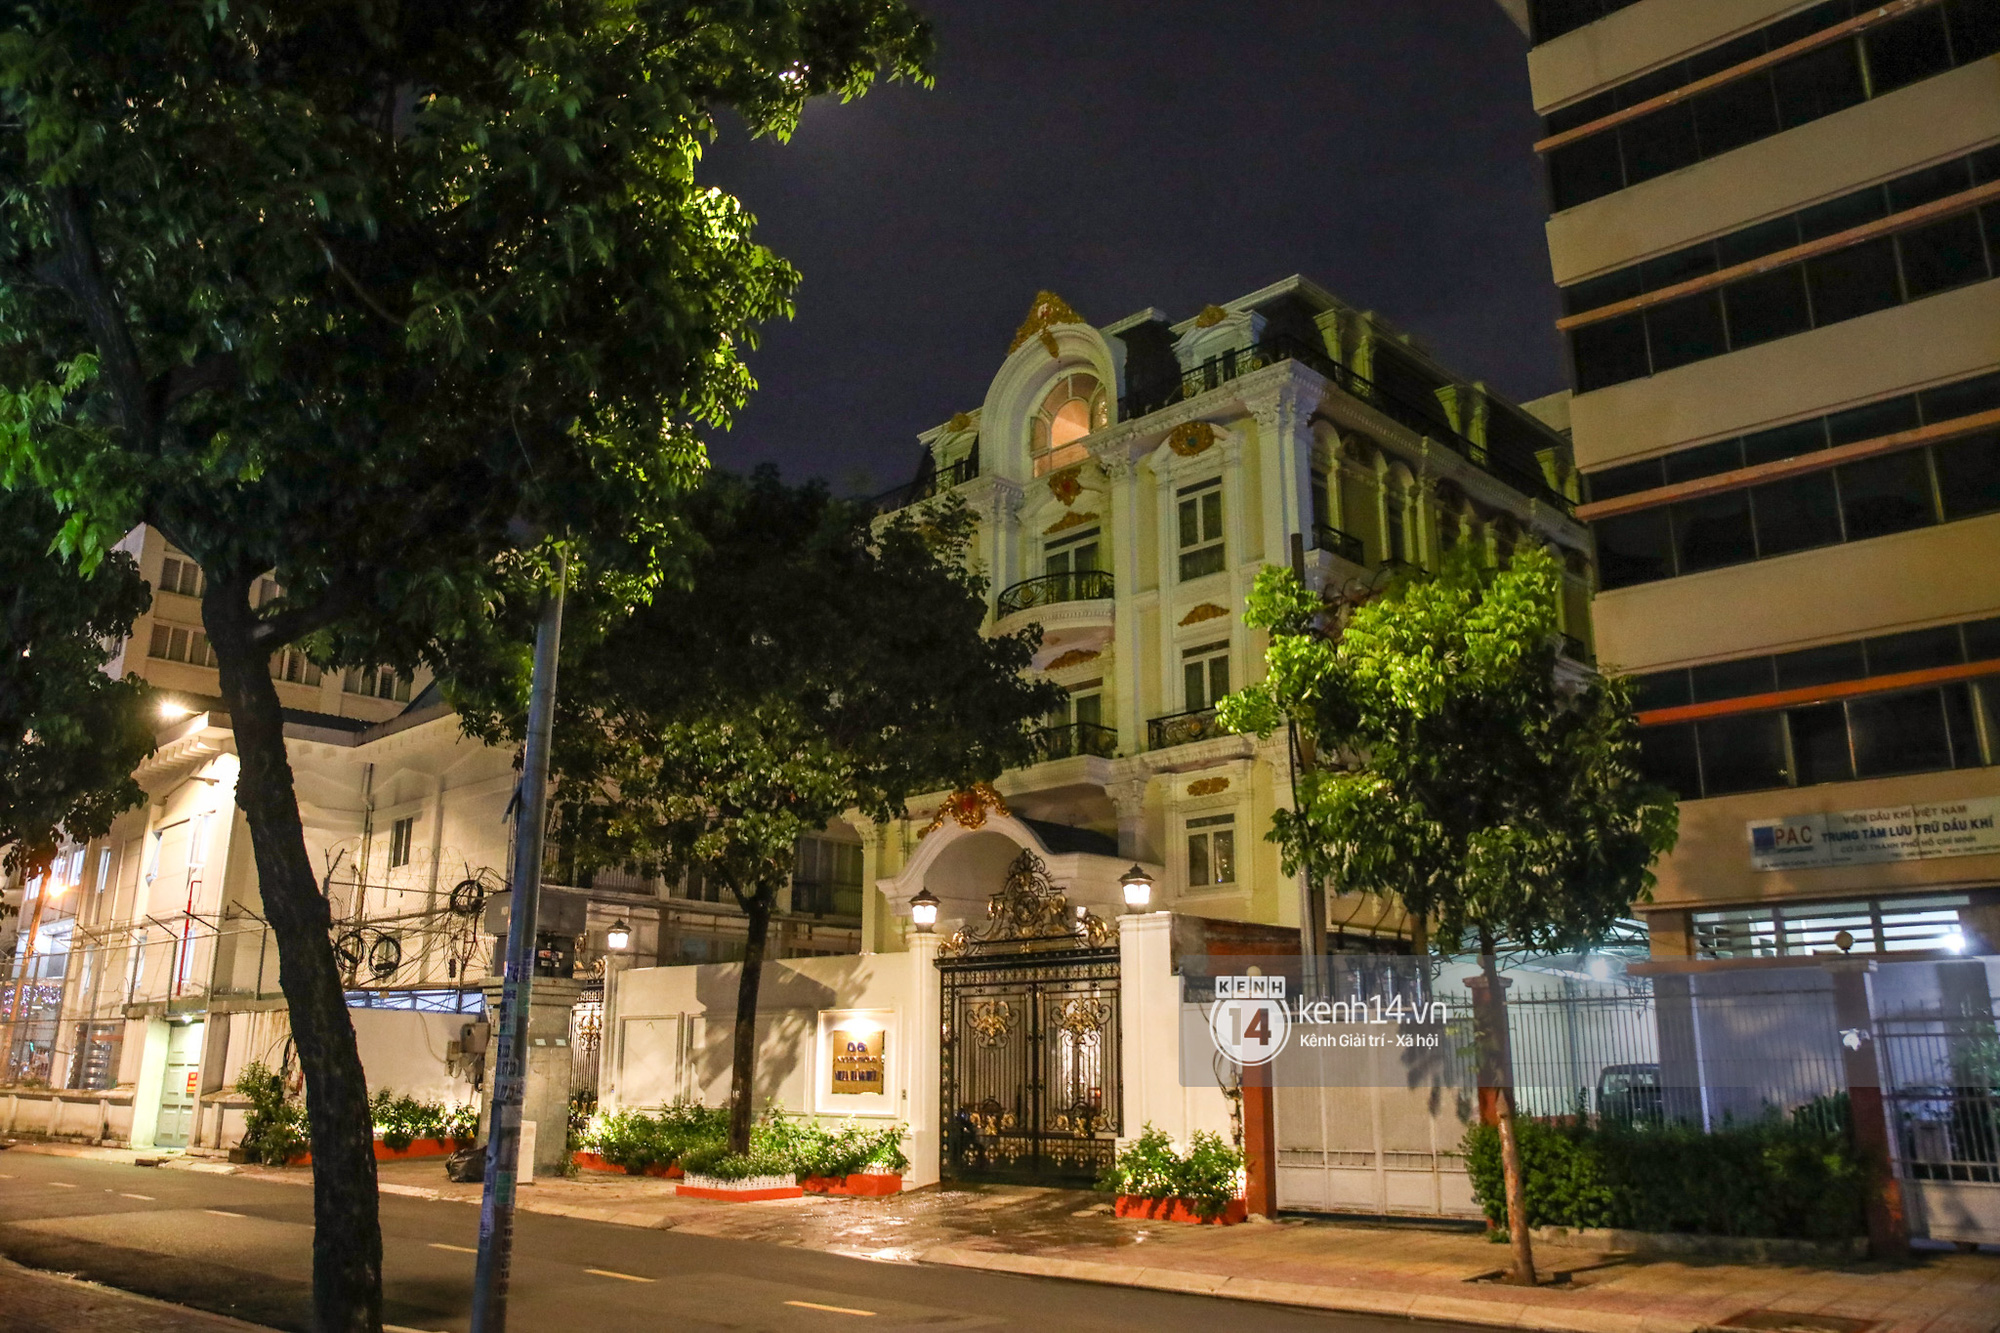 Cận cảnh biệt thự 6 tầng, rộng 2400m2 của đại gia Phương Hằng: Nằm giữa trung tâm Sài Gòn, độ xa hoa, sang trọng bậc nhất giới thượng lưu - Ảnh 2.